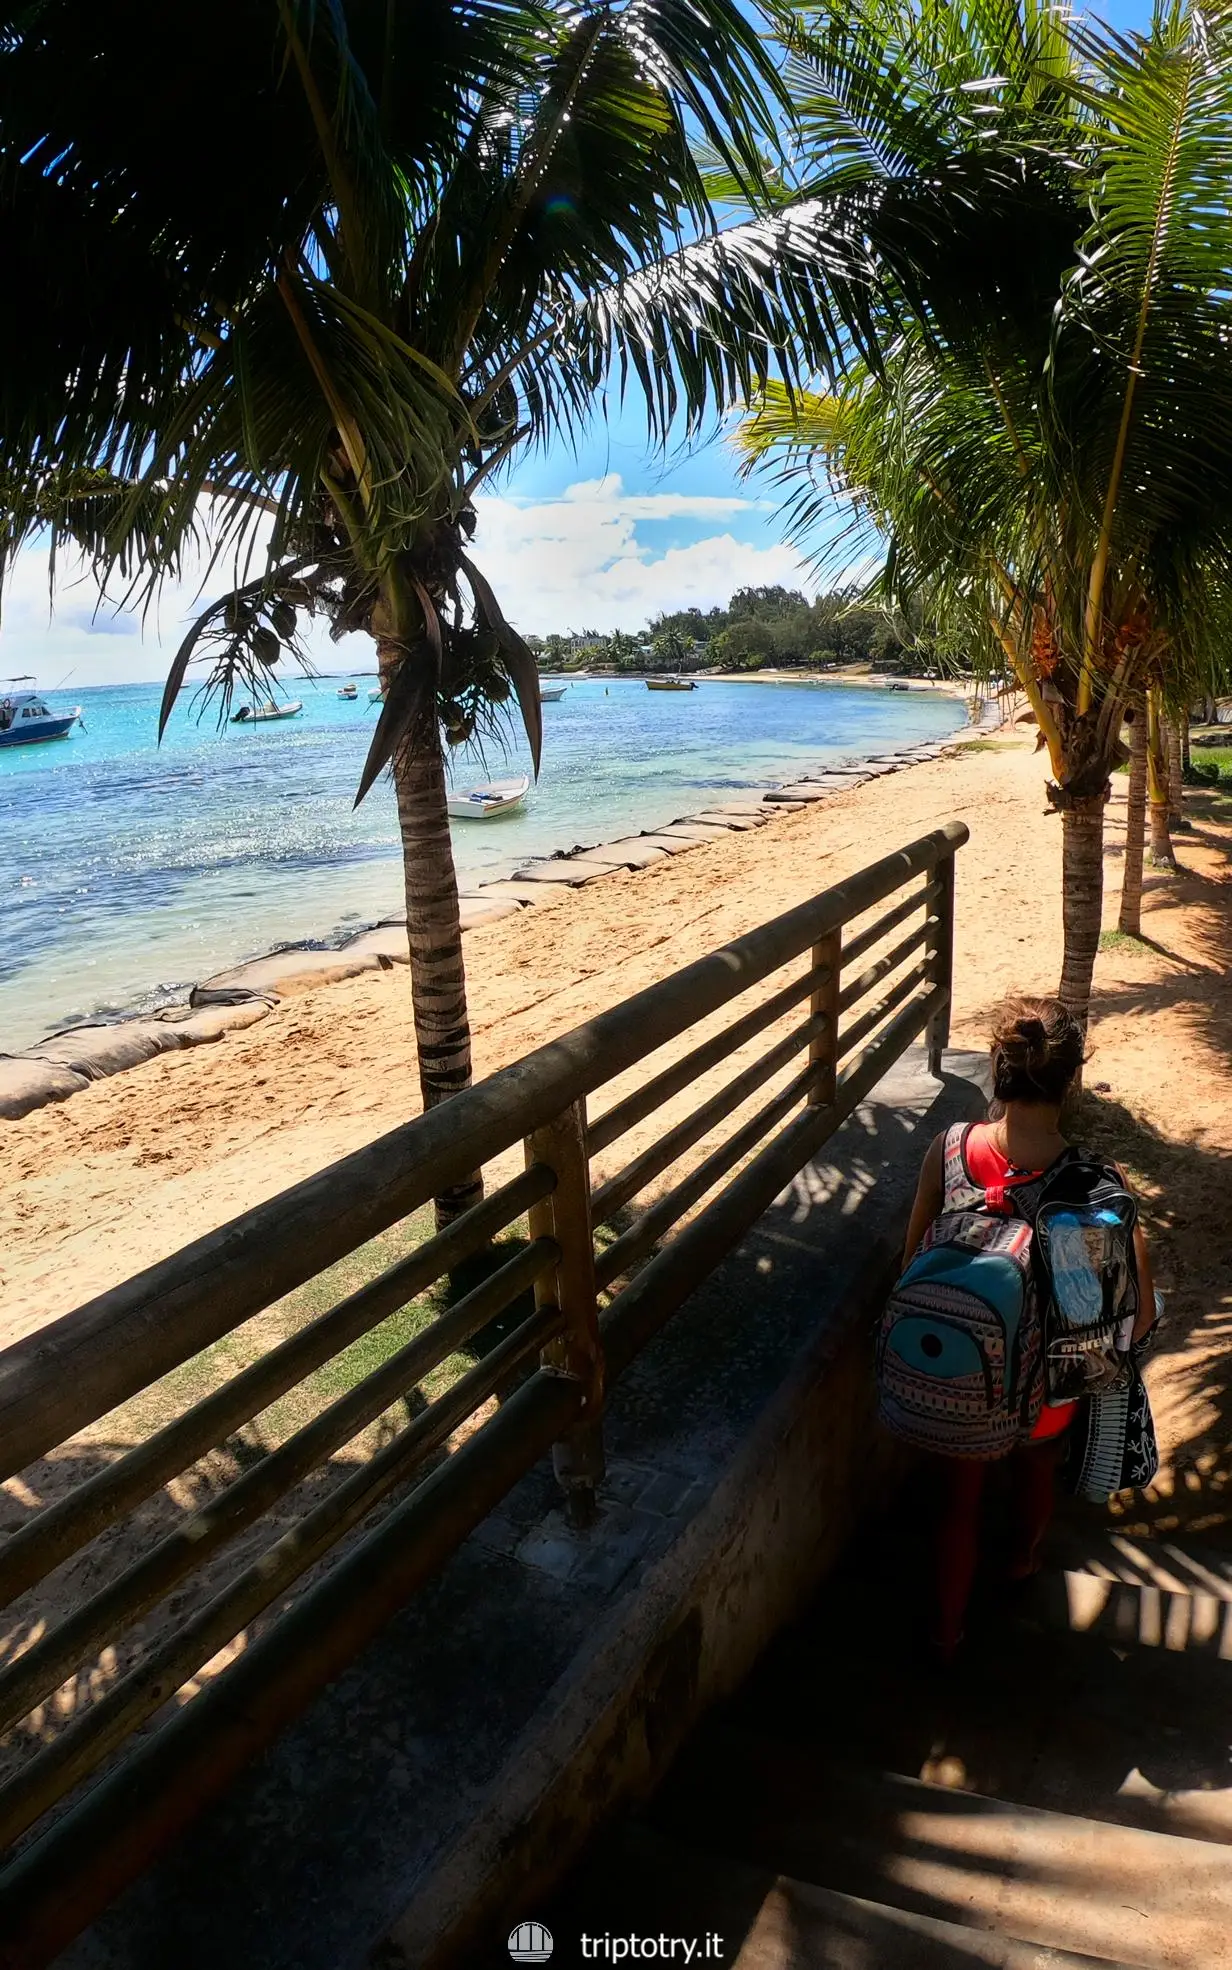 Migliori spiagge Mauritius - Passerella per arrivare alla paradisiaca spiaggia di Bain Boeuf a Mauritius - Best beaches in Mauritius